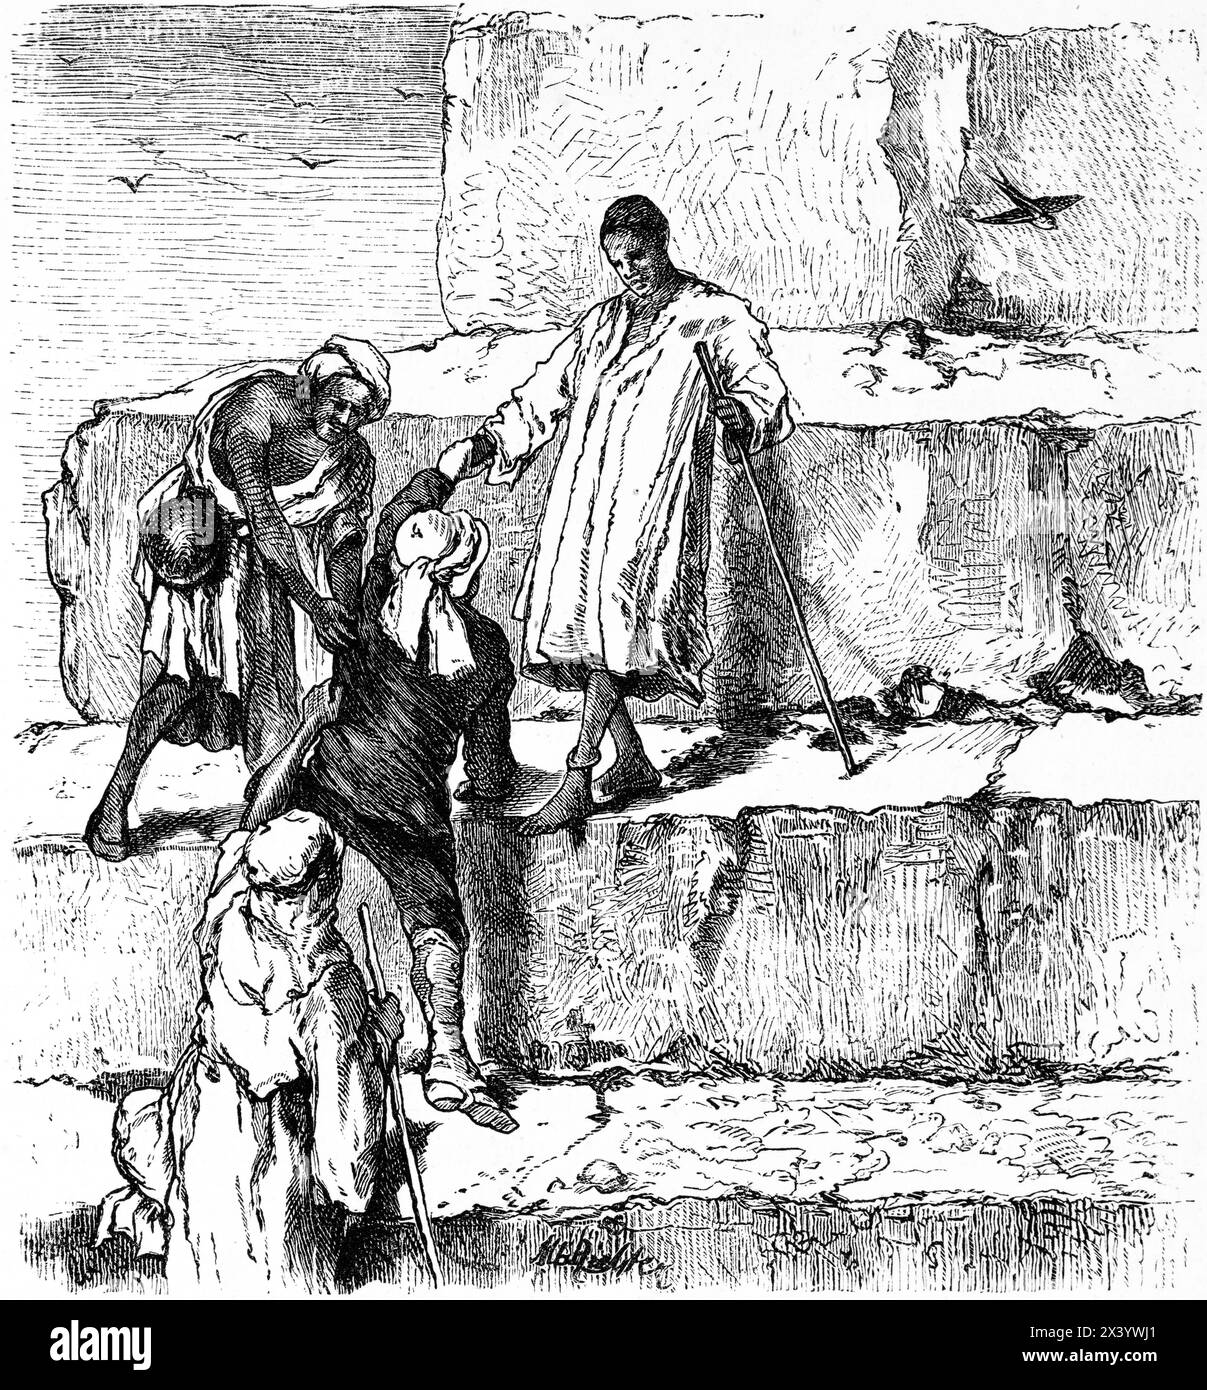 Gli egiziani danno una mano agli europei quando si arrampica su una piramide, illustrazione storica 1880 Foto Stock